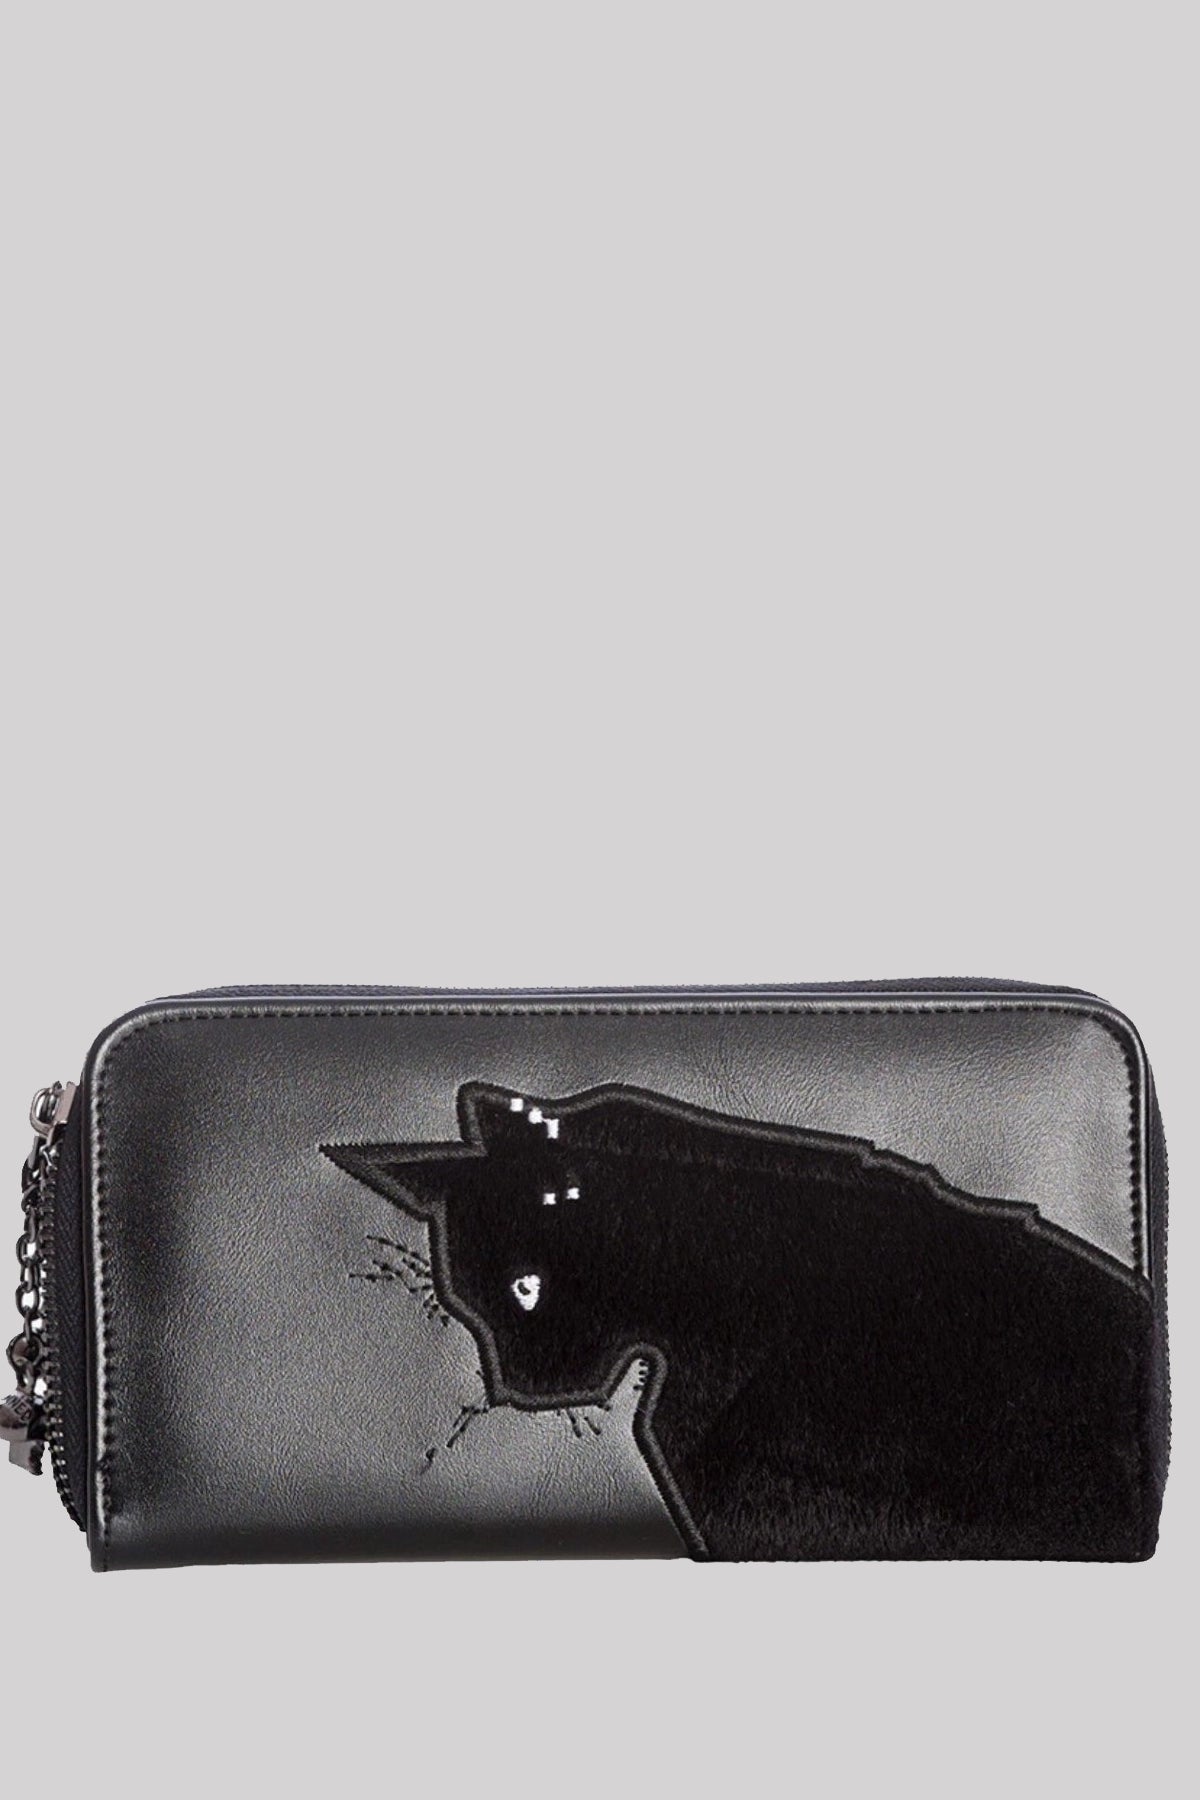 Banned Alternative Sabrina Witchcraft Cat Wallet Purse